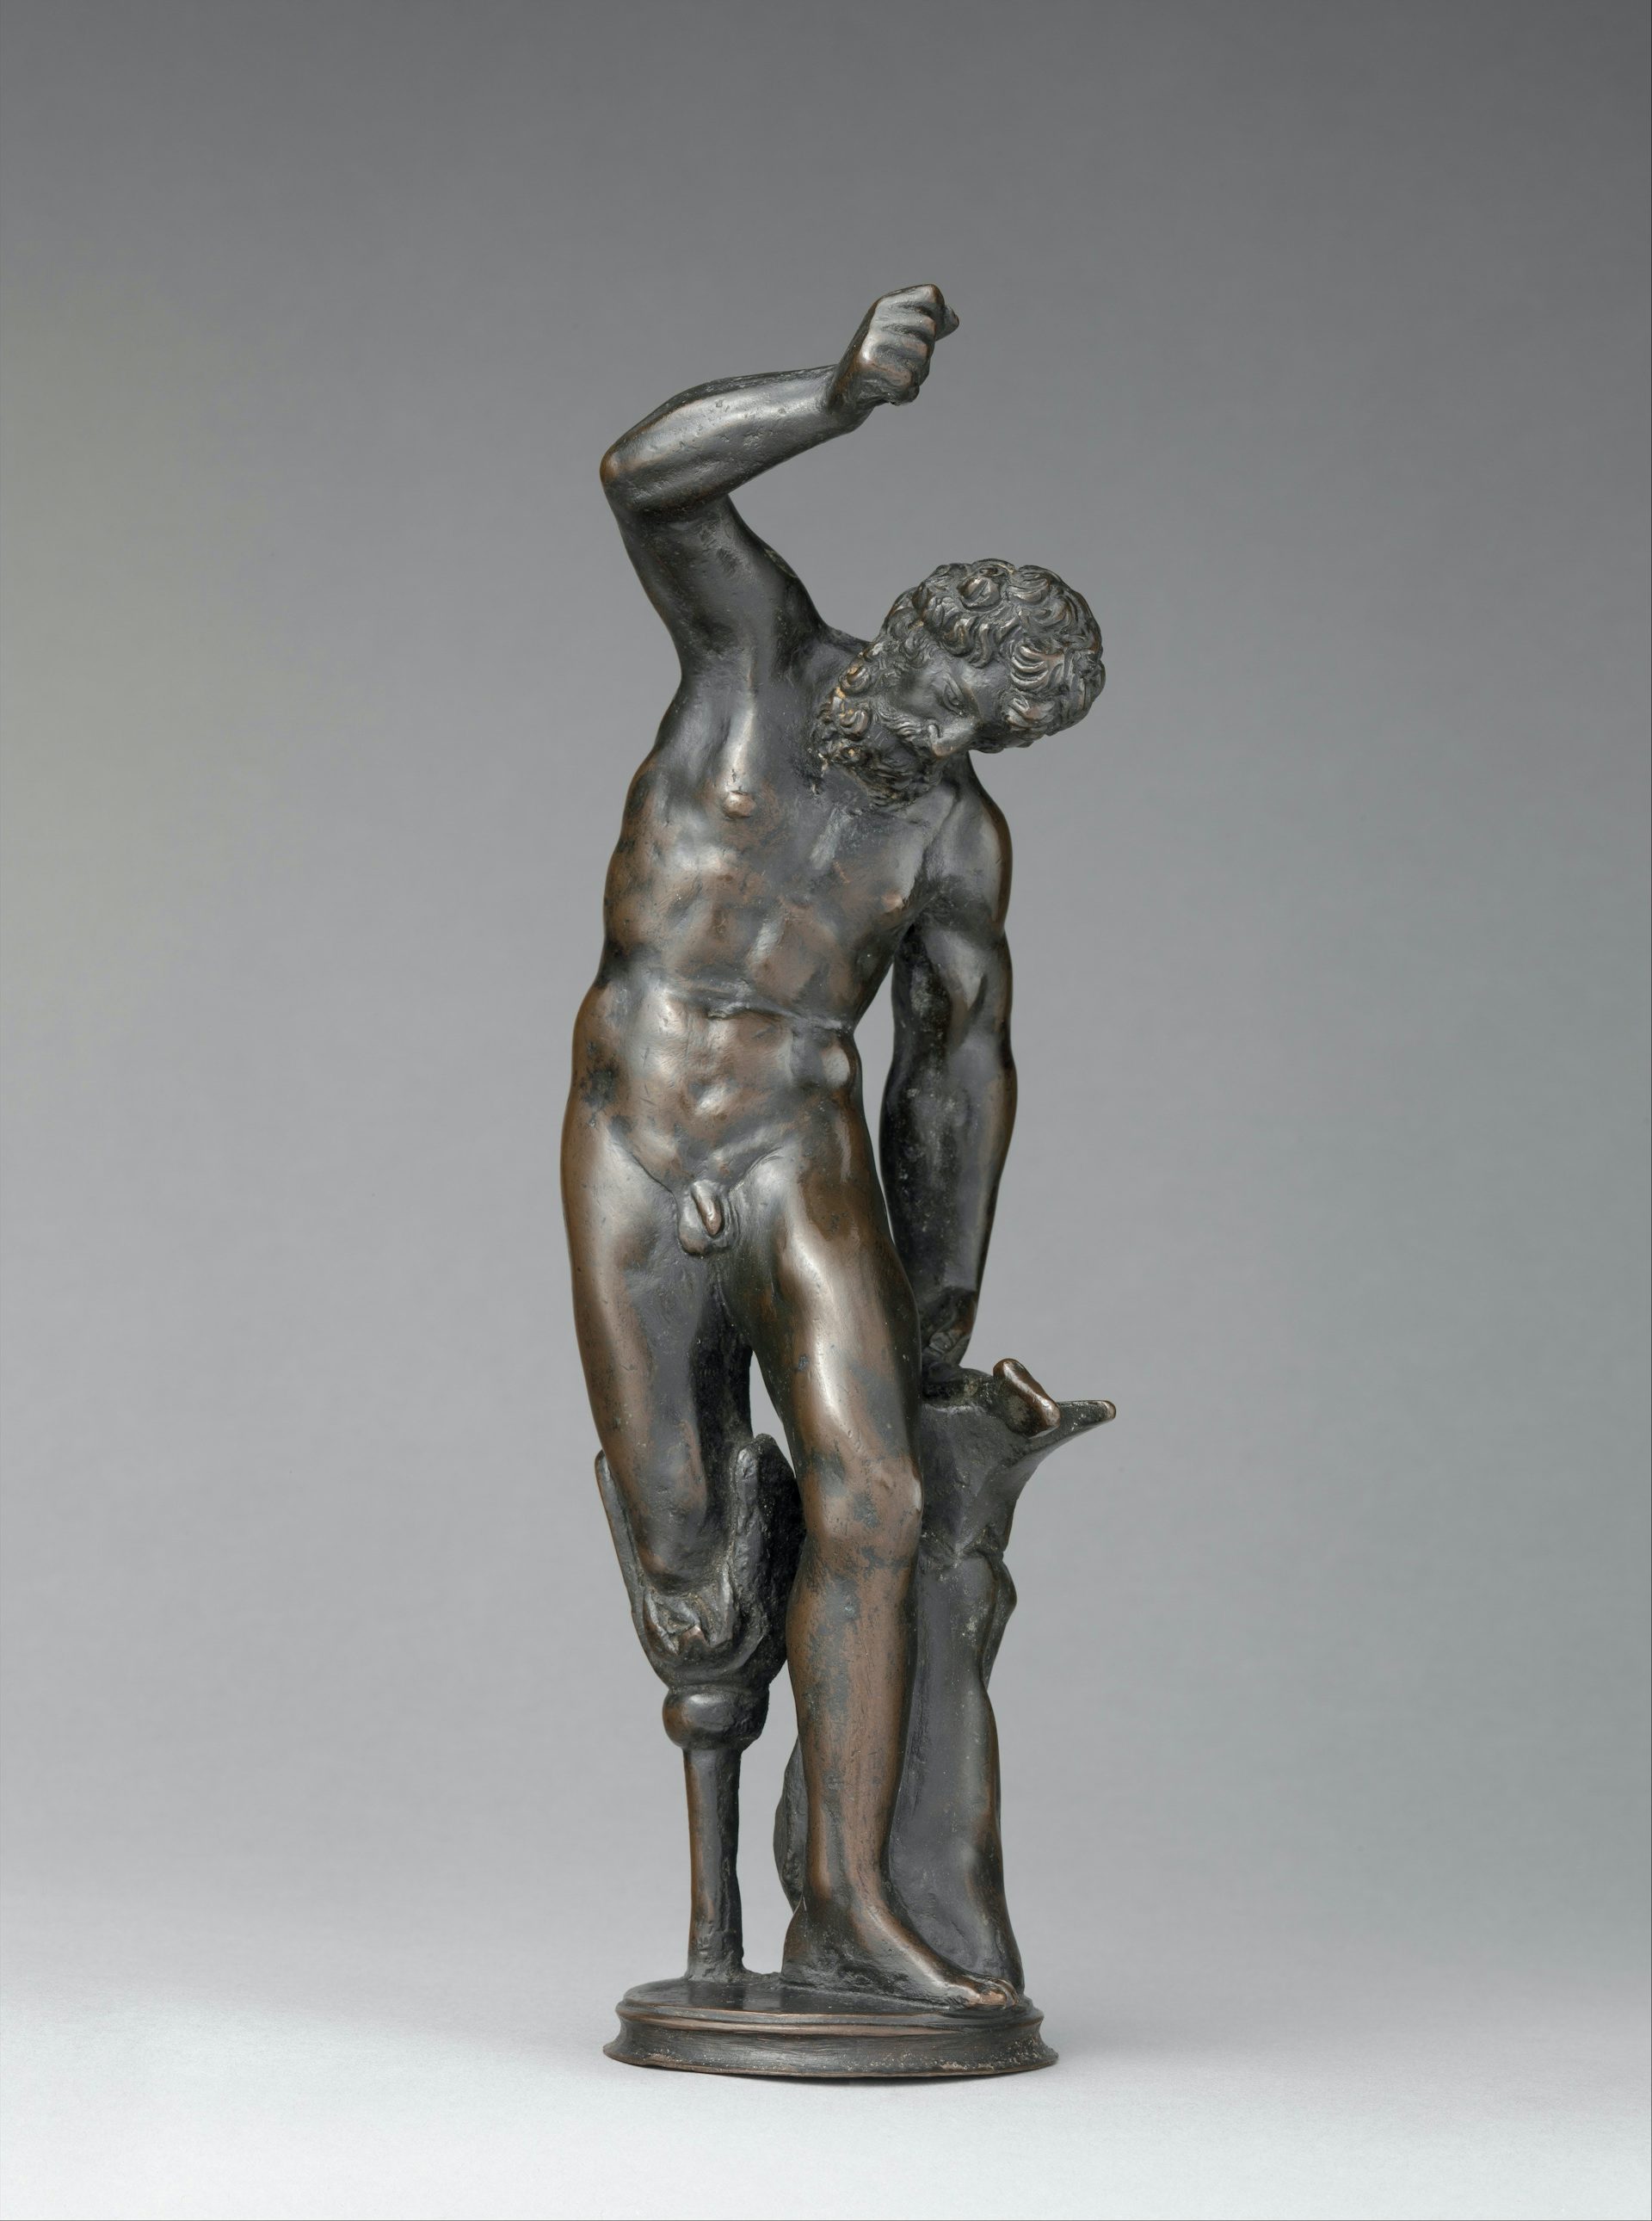 Vulcan Bronze Sculpture 16th Century The Met